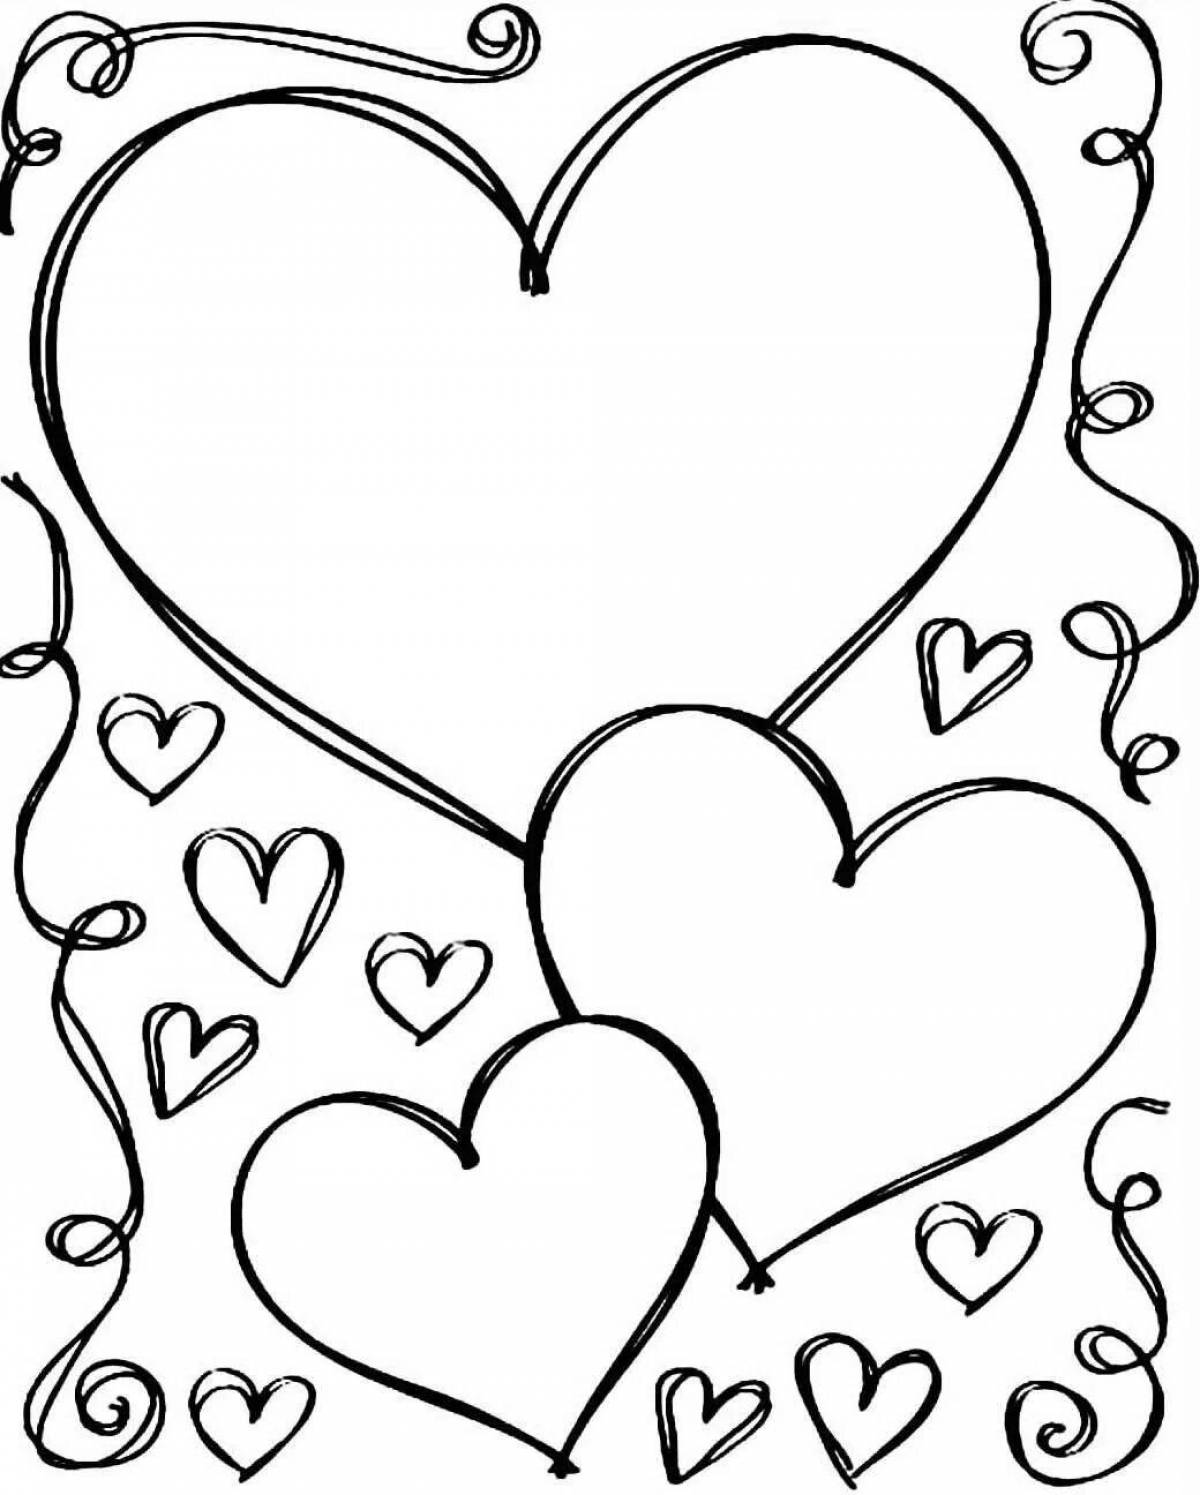 Рисунки для срисовки на лист а4. Раскраска сердечко. Сердечко раскраска для детей. Валентинки раскраски. Рисунок сердца для раскрашивания.